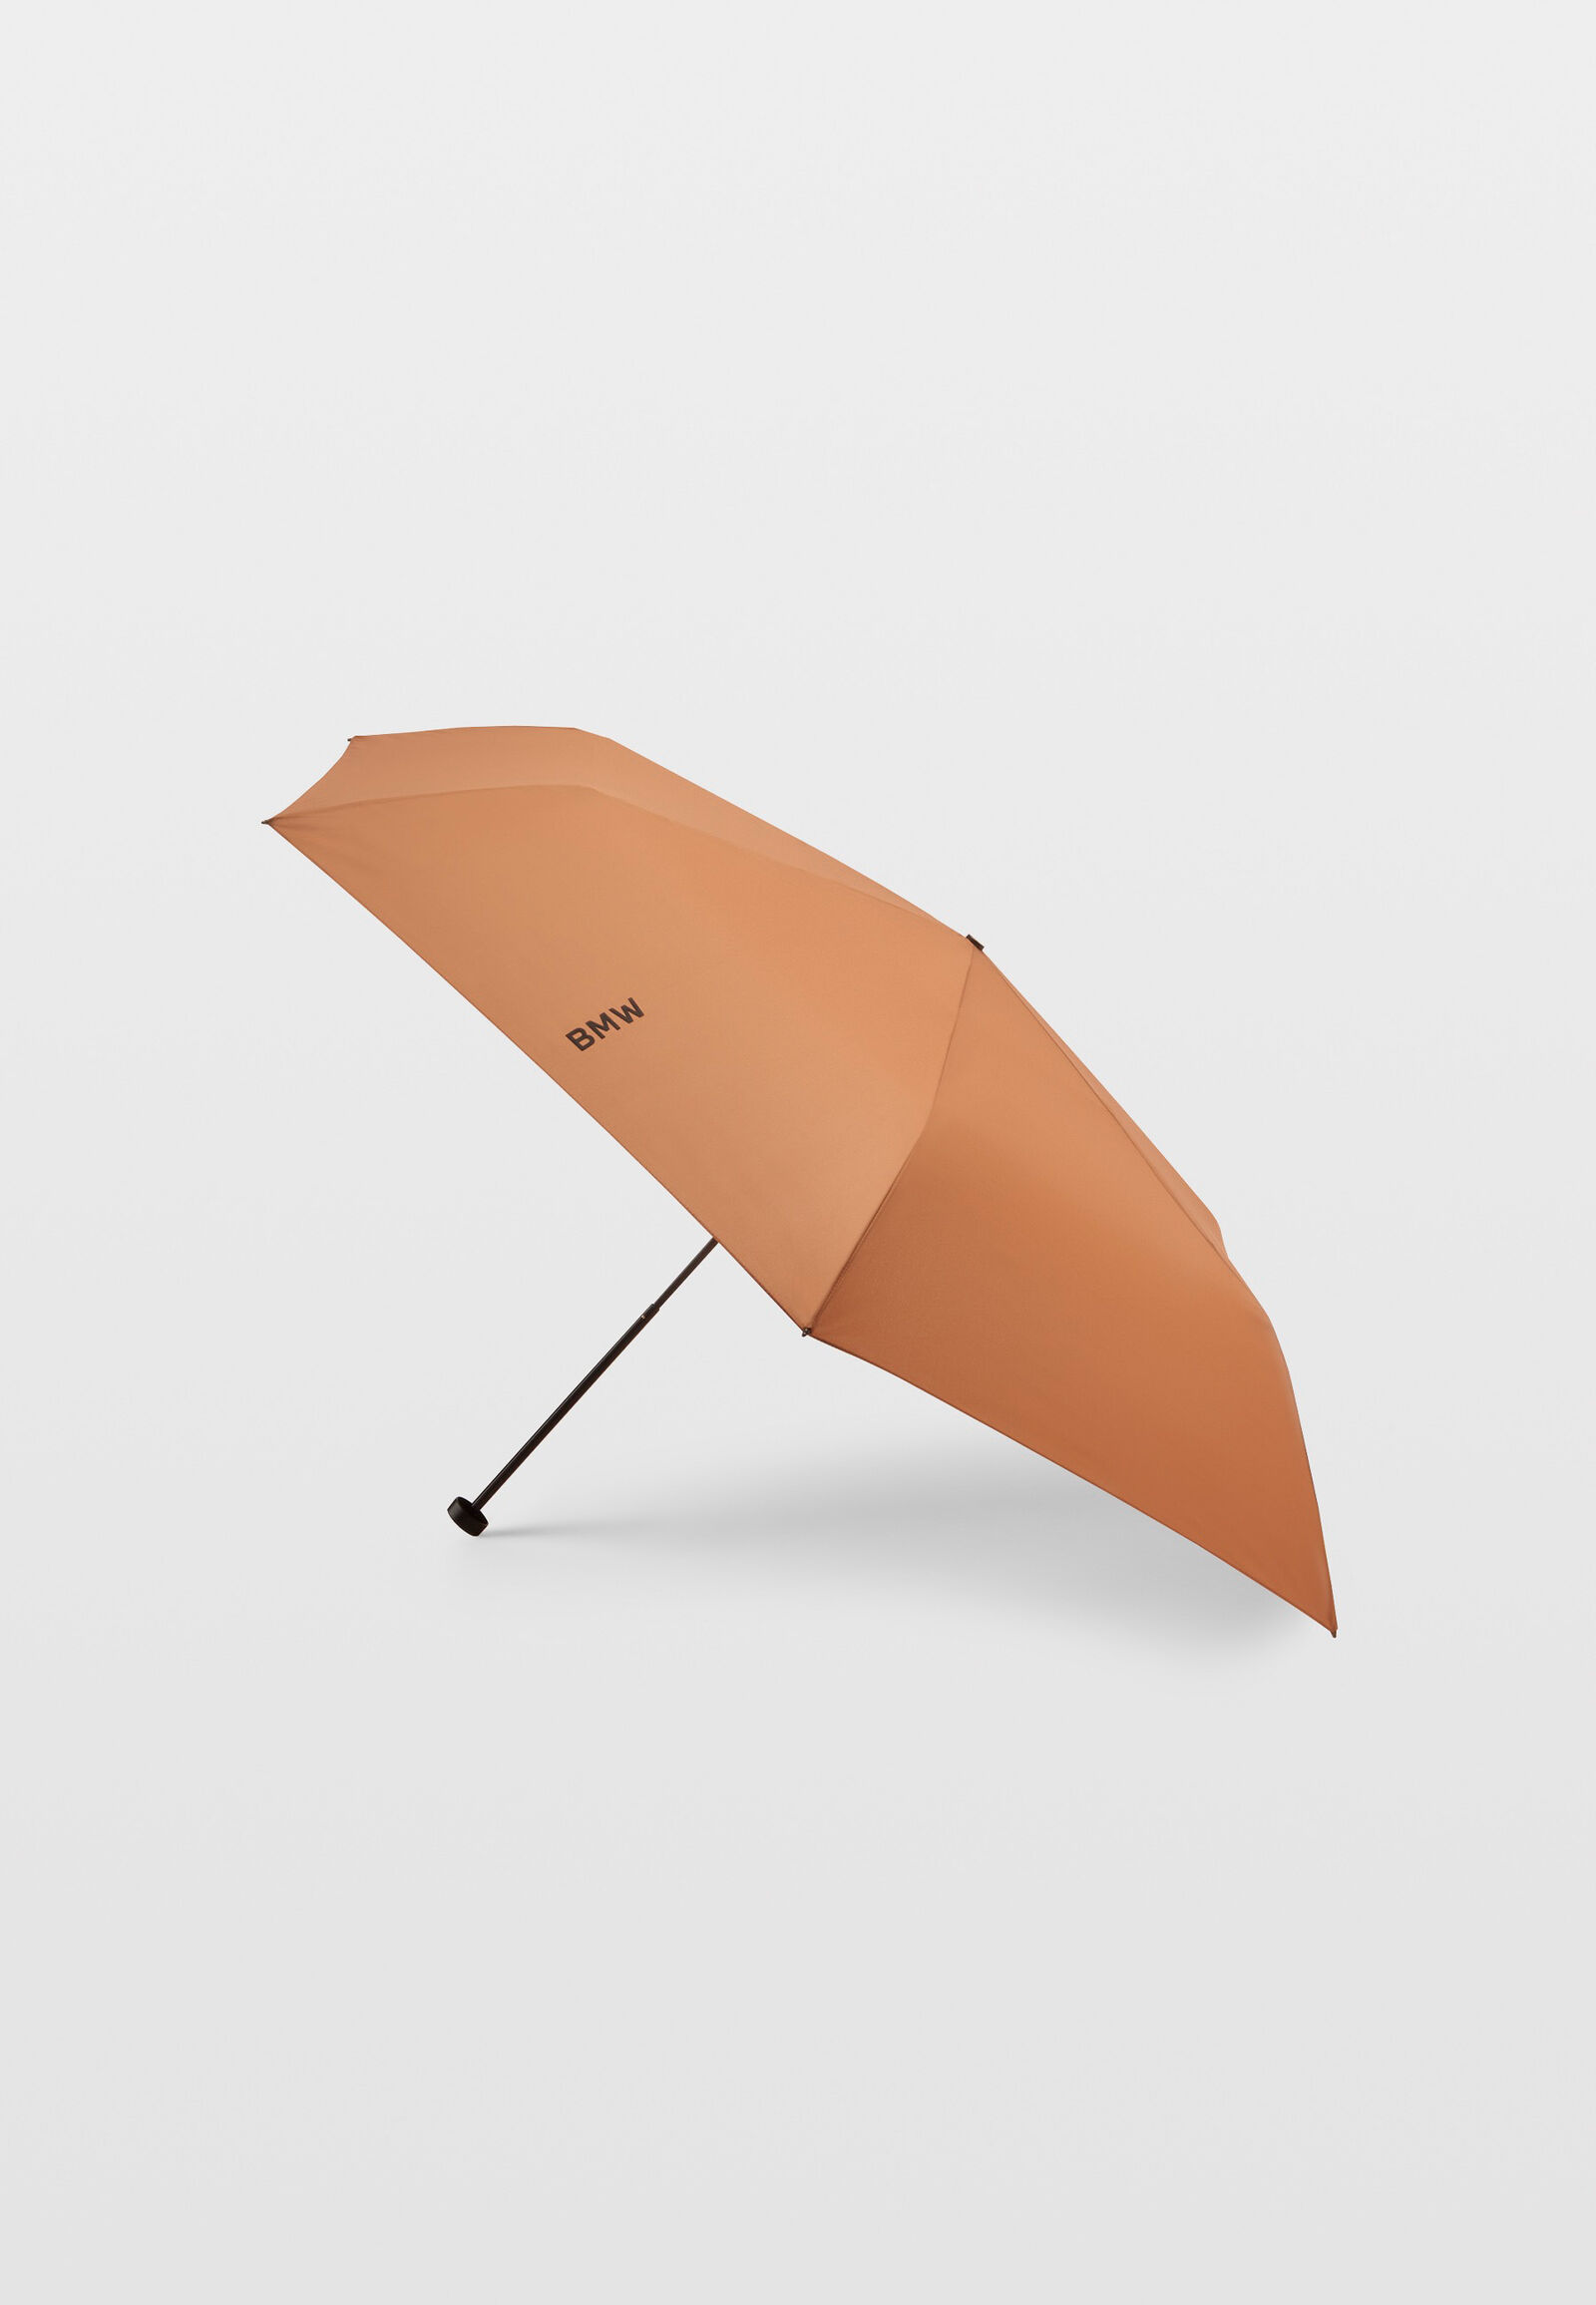 galop graan Kustlijn BMW Micro Tag Paraplu | BMW Lifestyle Store